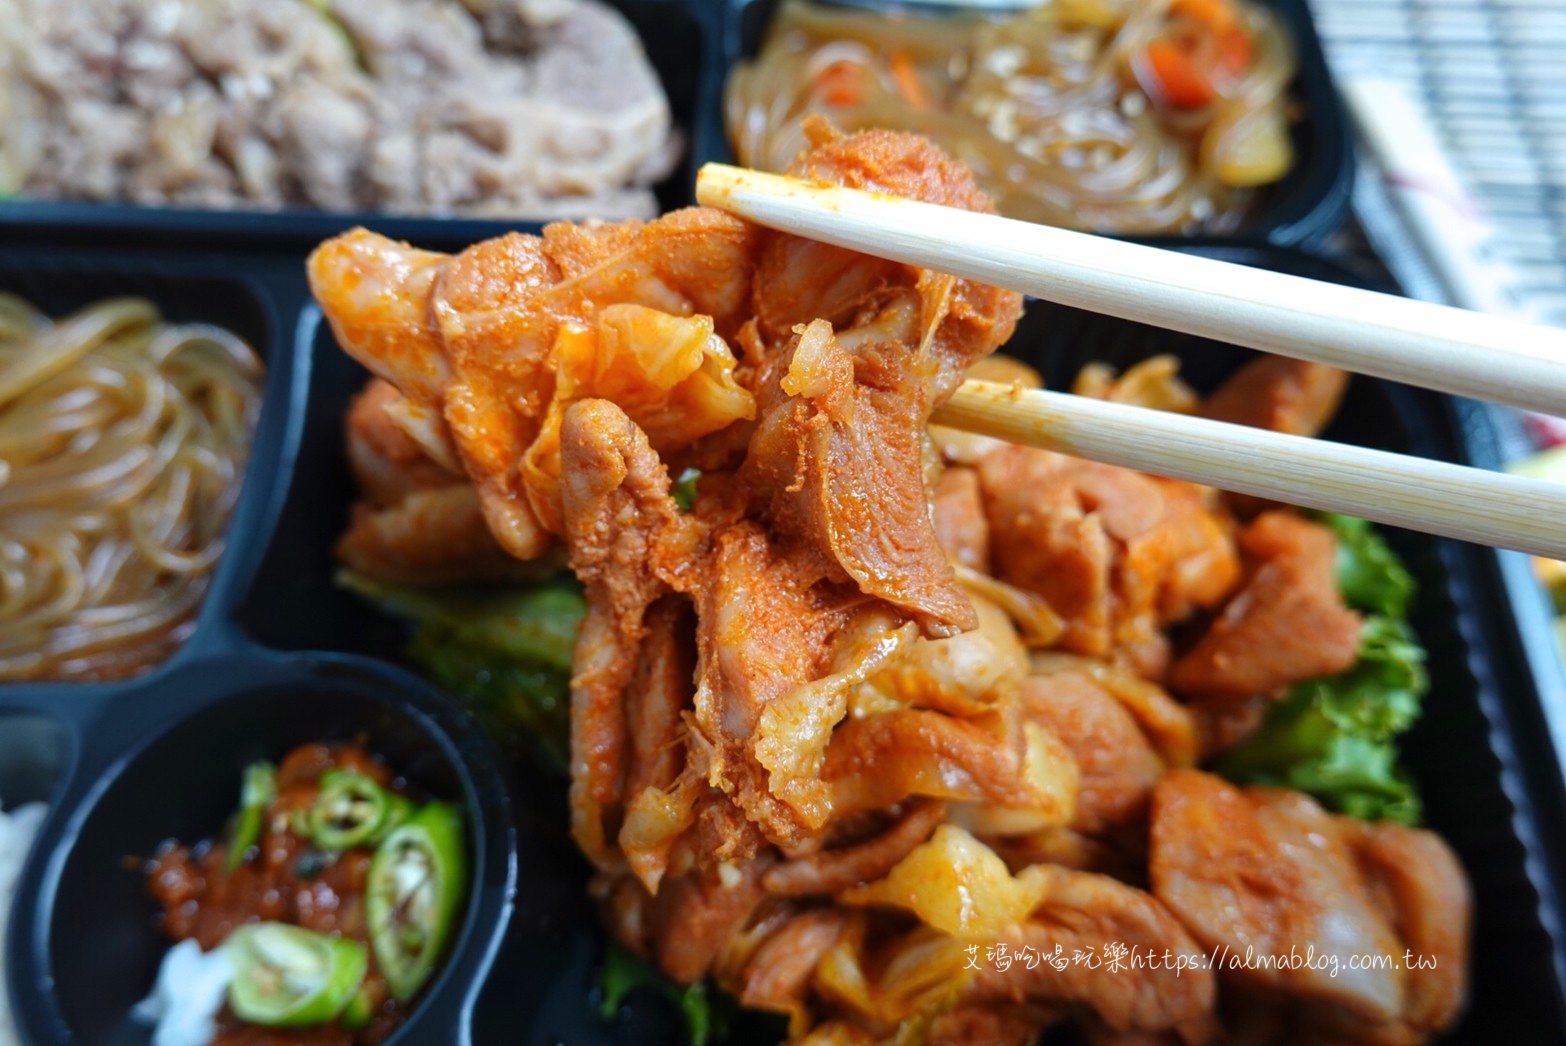 便當,桃園韓式,與肉食堂,花舞豬,韓式便當,韓式烤肉